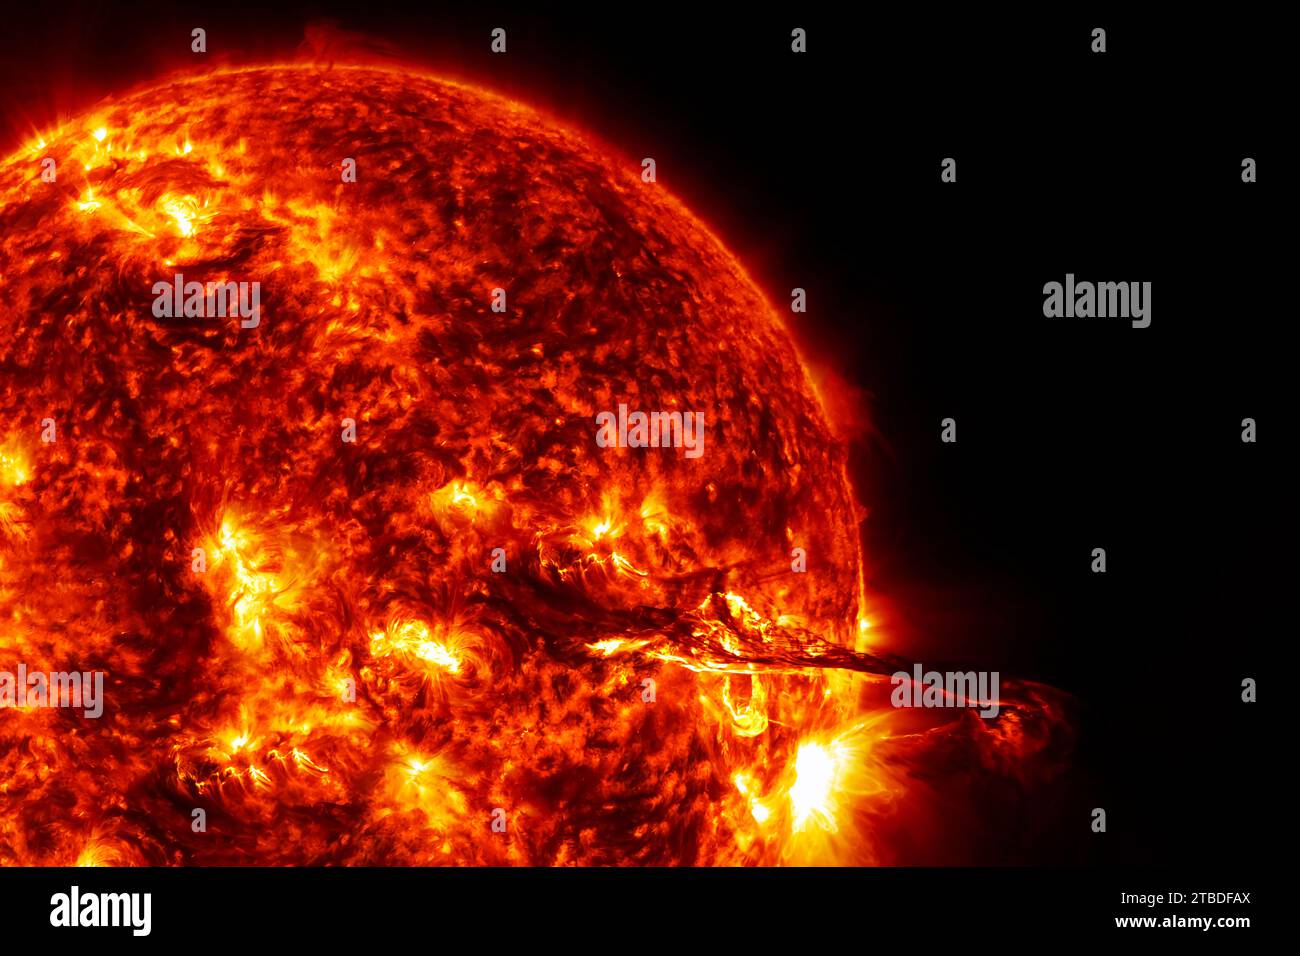 Le soleil sur un fond sombre dans l'espace. Éléments de cette image fournis par la NASA. Photo de haute qualité Banque D'Images